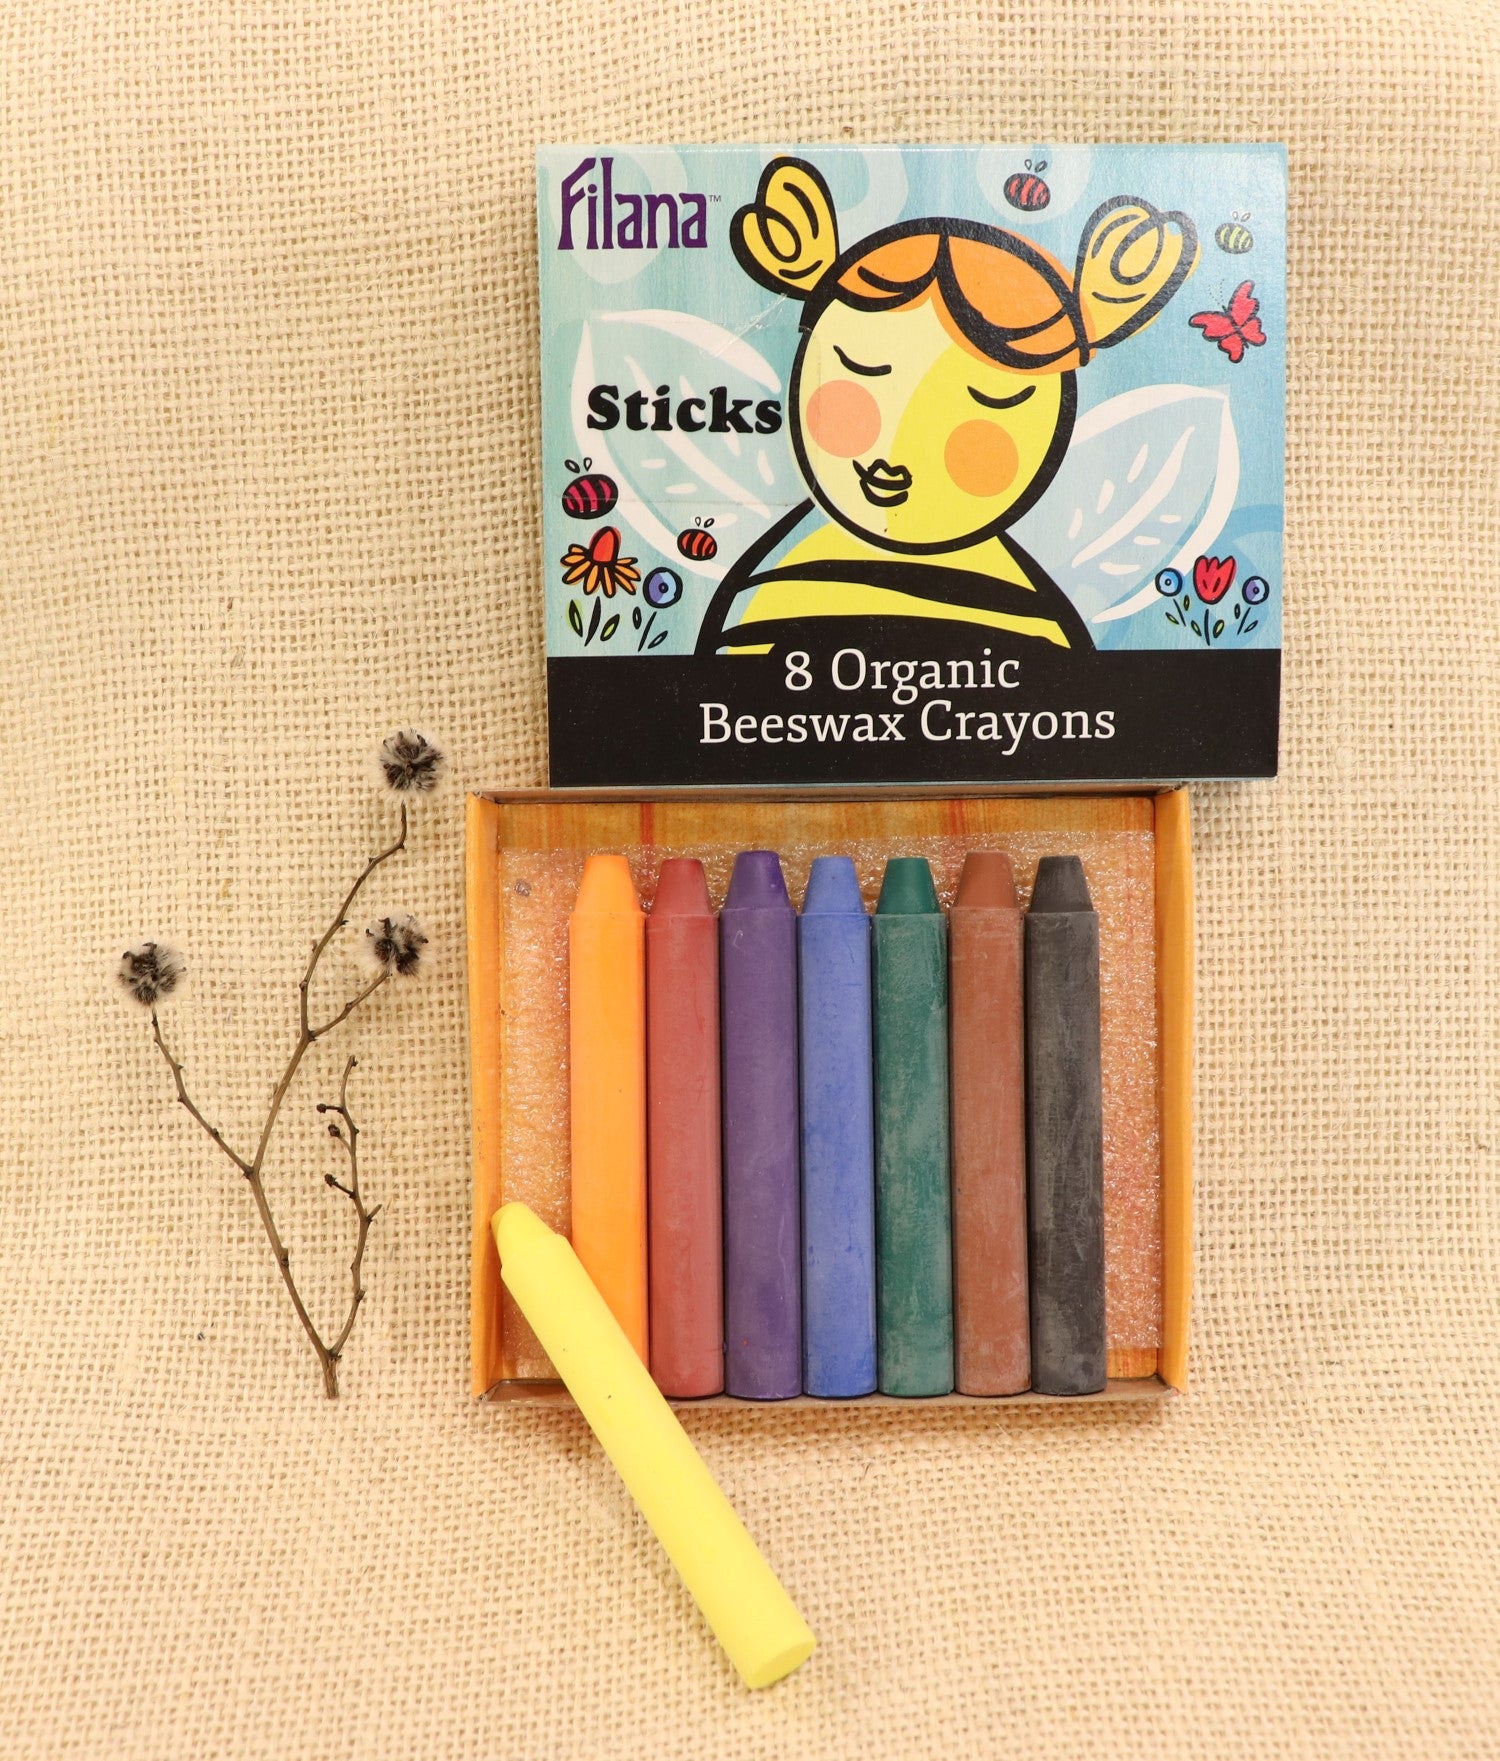 Filana Organic Beeswax Crayons, Sticks 8 with Brown & Black